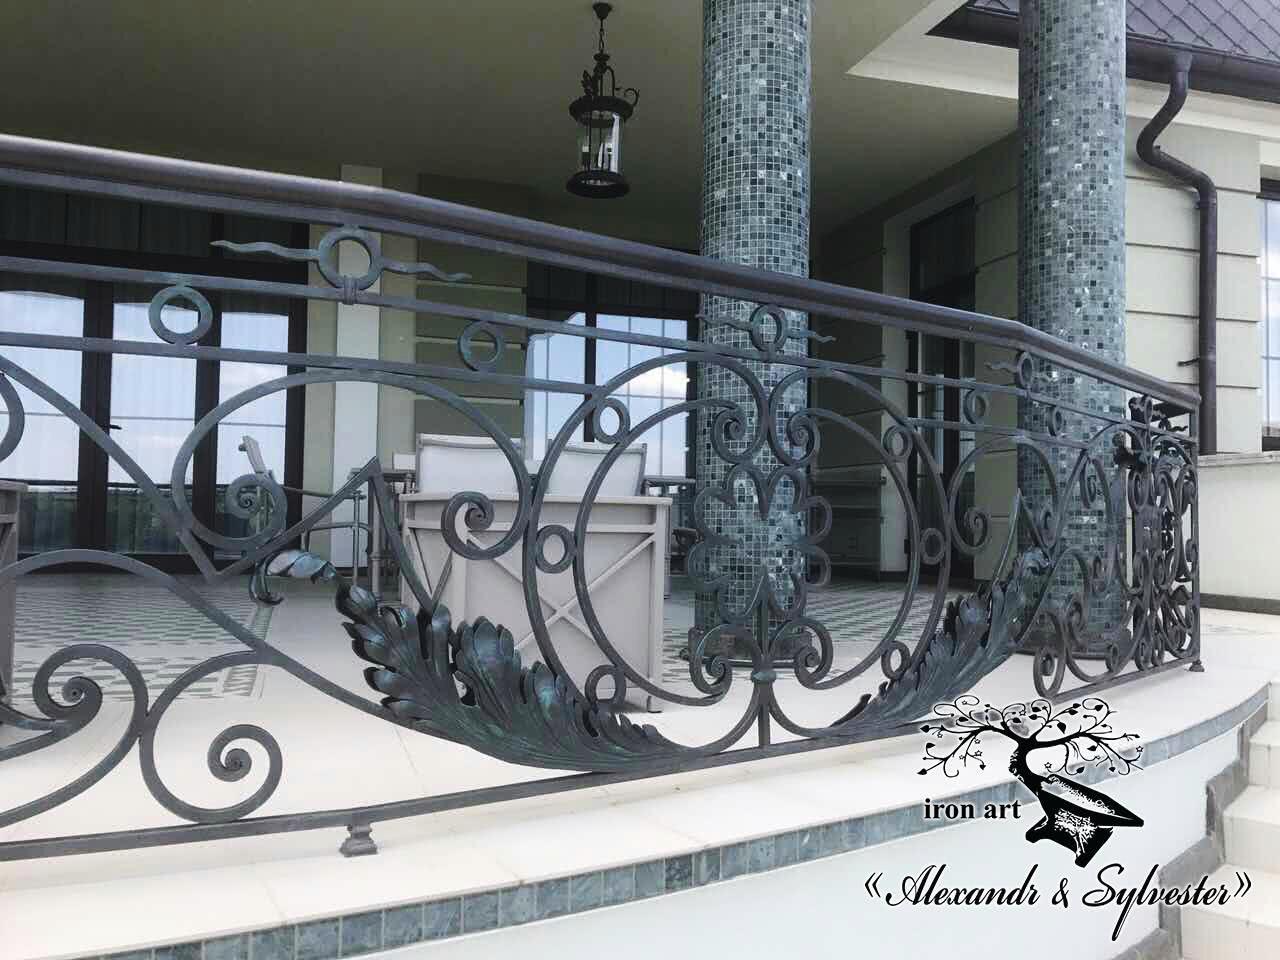 ringhiere in ferro battuto forme particolari balcone persiane